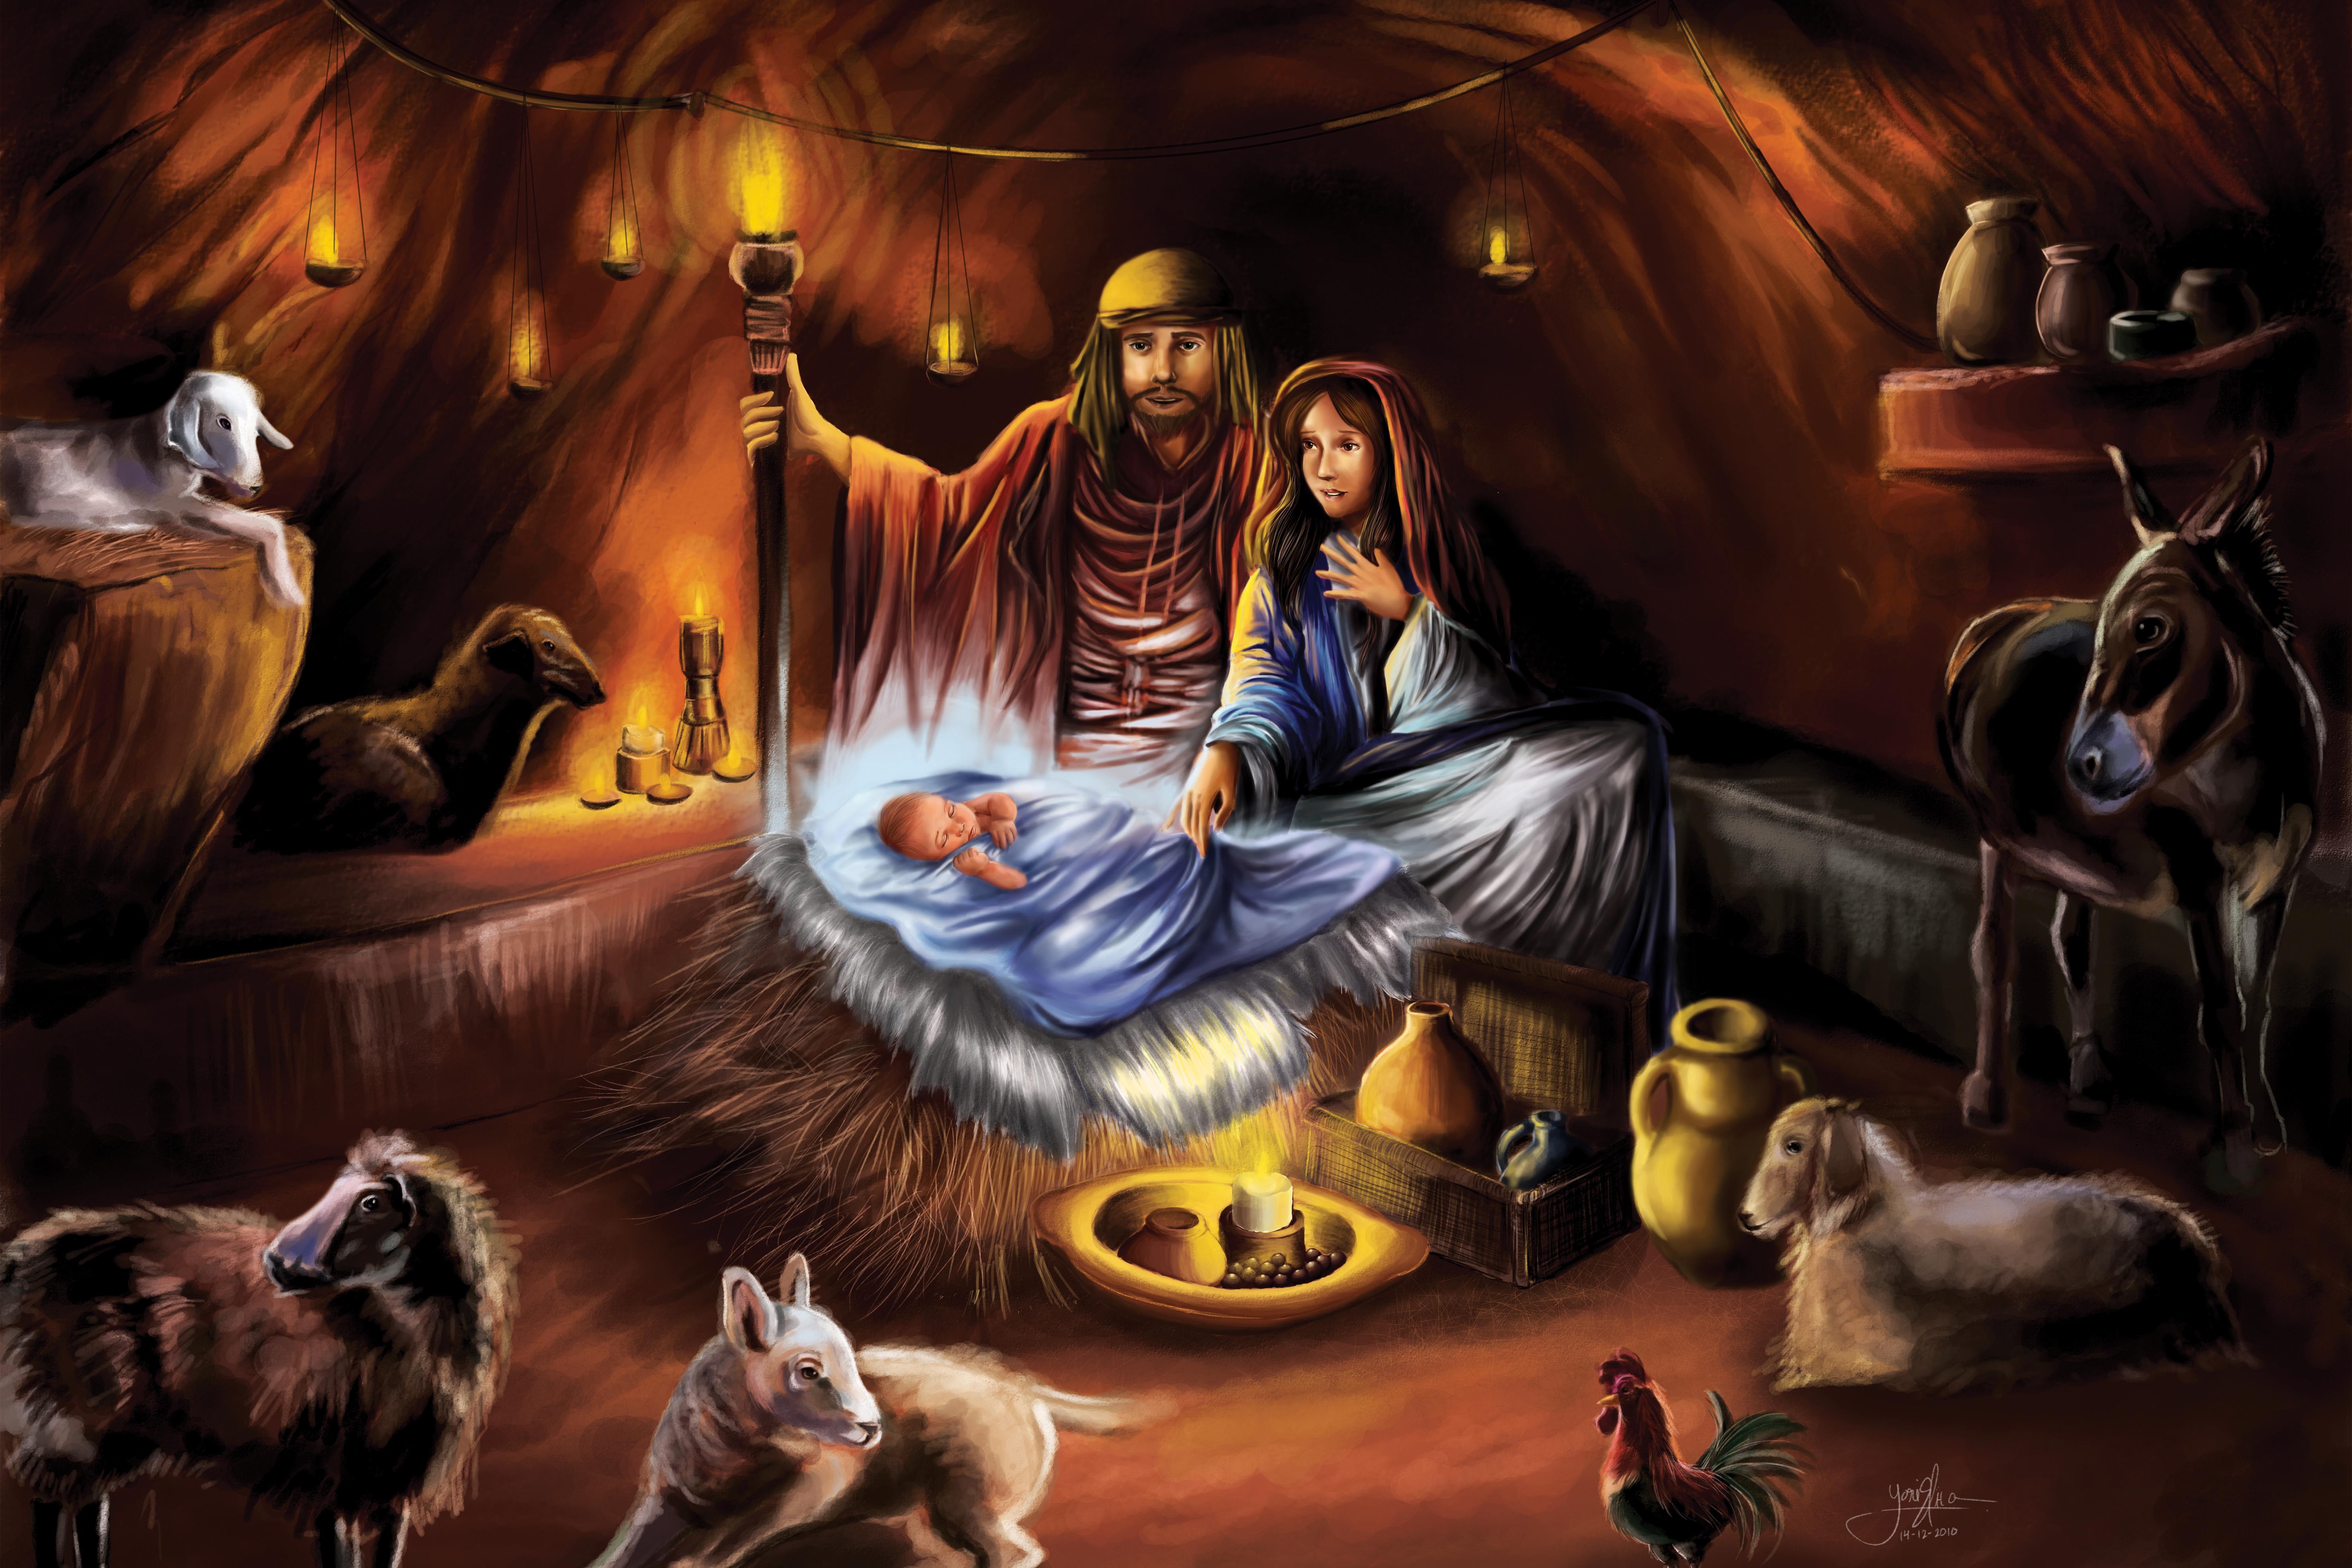 Birth of Christ Wallpaper. Following Christ Wallpaper, Incredible Christ Wallpaper and Birth of Christ Wallpaper